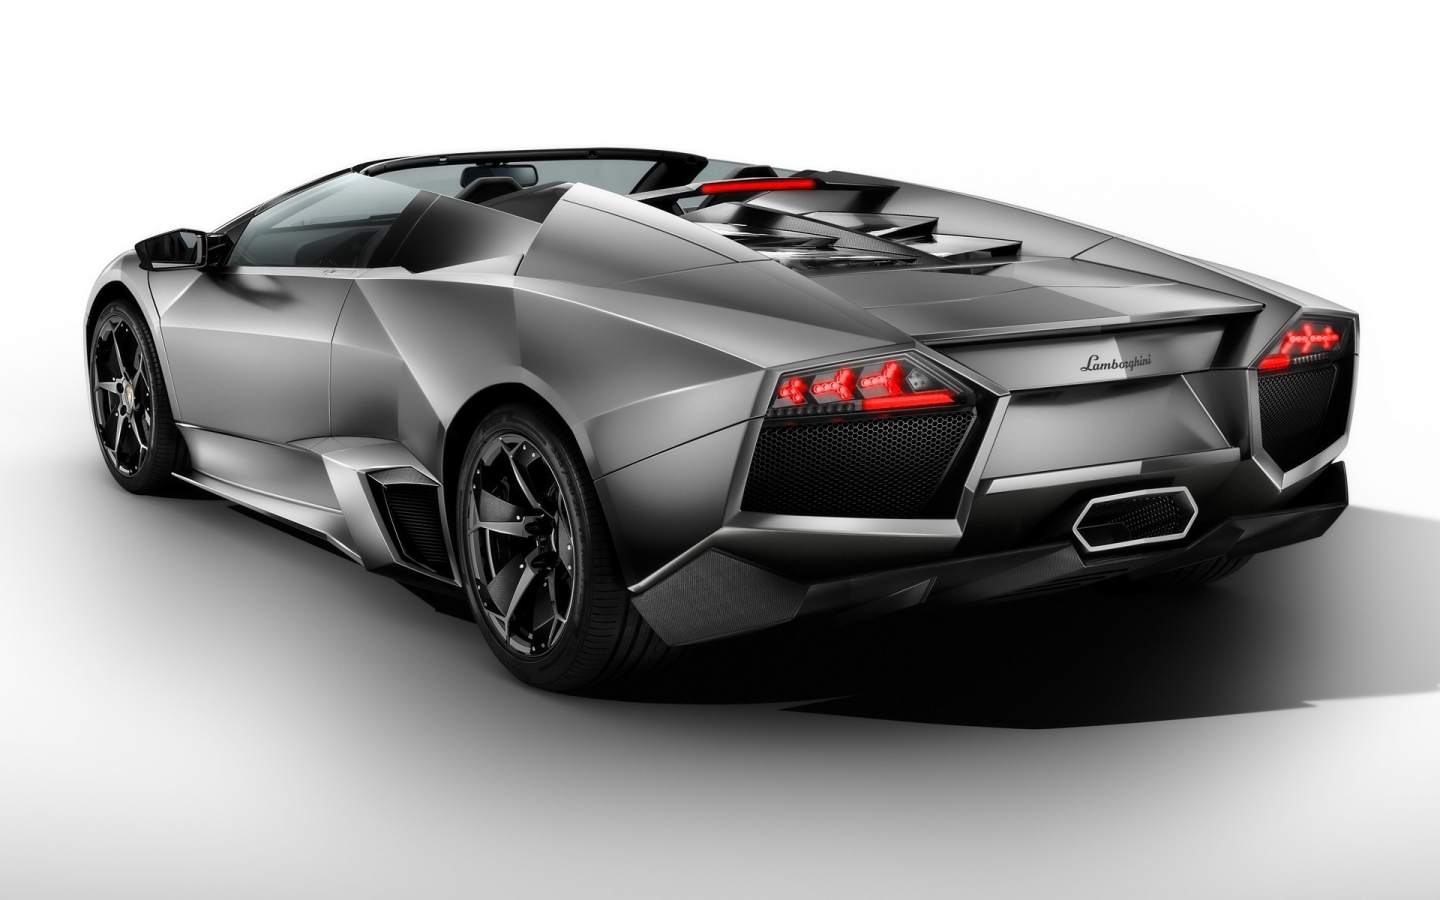 Lamborghini Reventon Roadster Rear 2010 for 1440 x 900 widescreen resolution